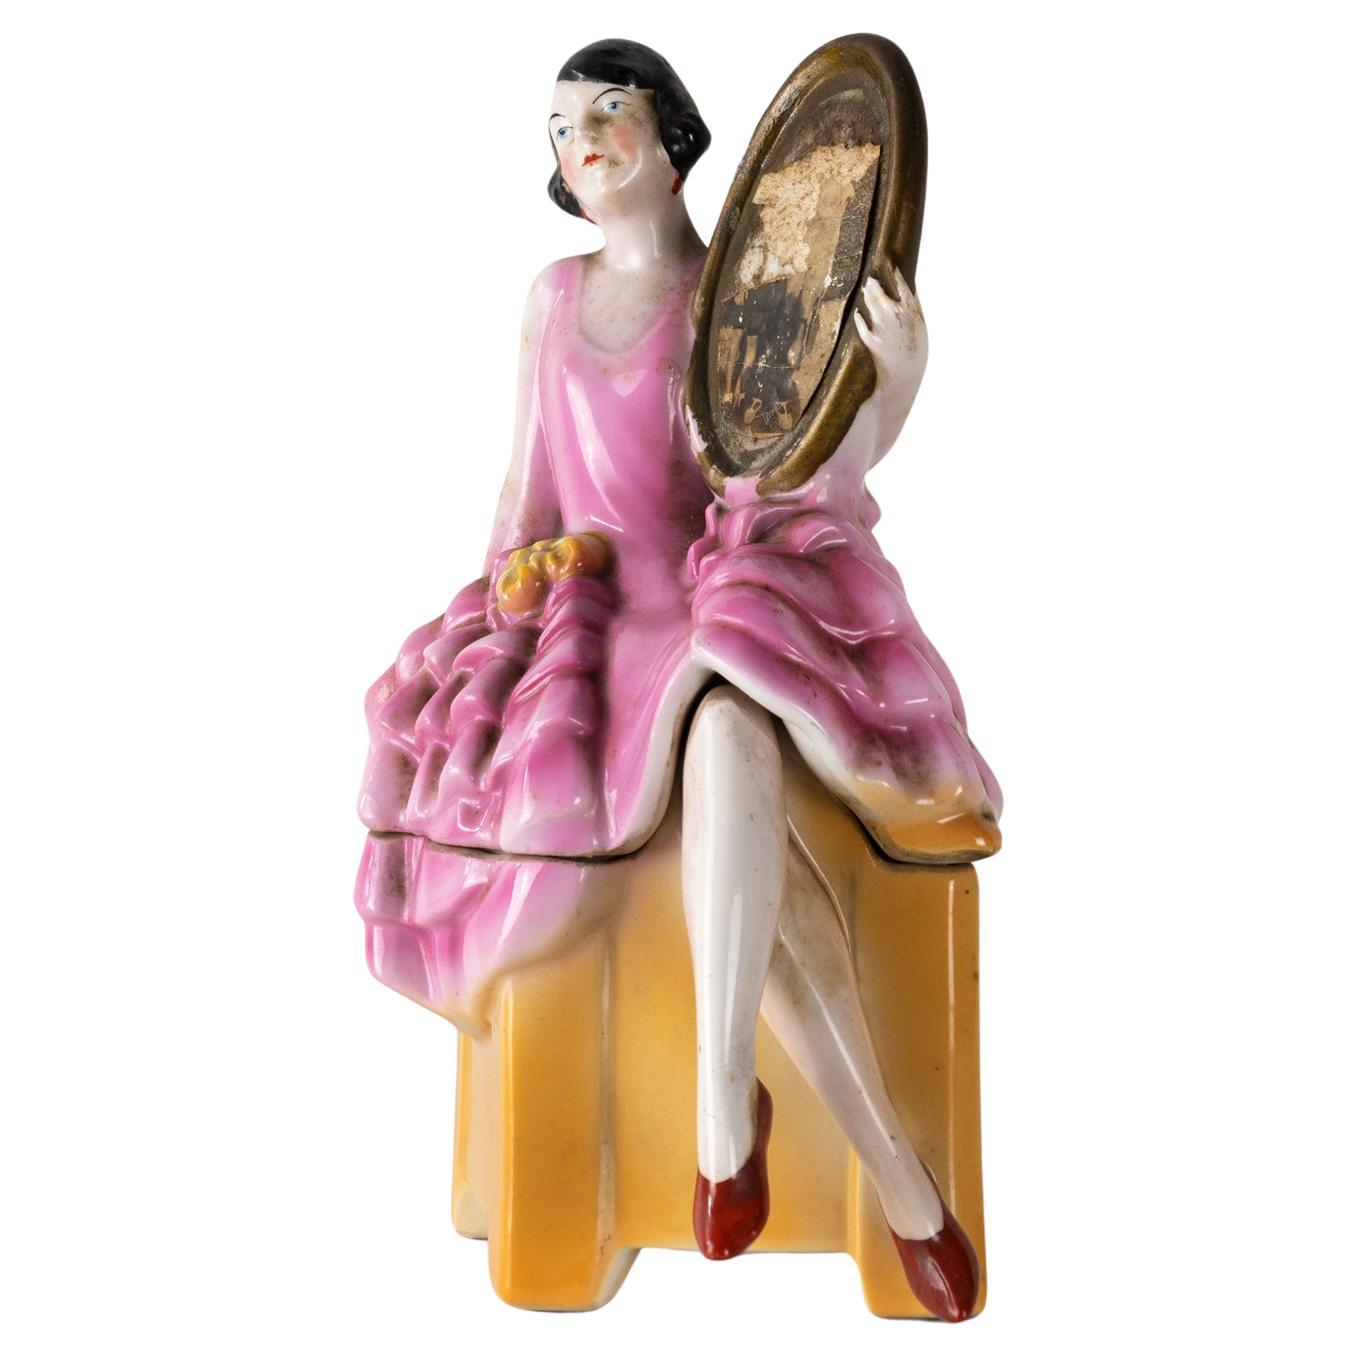 Deutsche Keramik-Pulverdose aus dem Art déco der 1930er Jahre /  Schmuckkästchen in Form einer Art-Déco-Hutschachtel mit einem Flapper-Girl, das auf dem Deckel sitzt und einen Spiegel hält.   
Wunderschöne Färbung und Detailtreue.
Ein seltenes